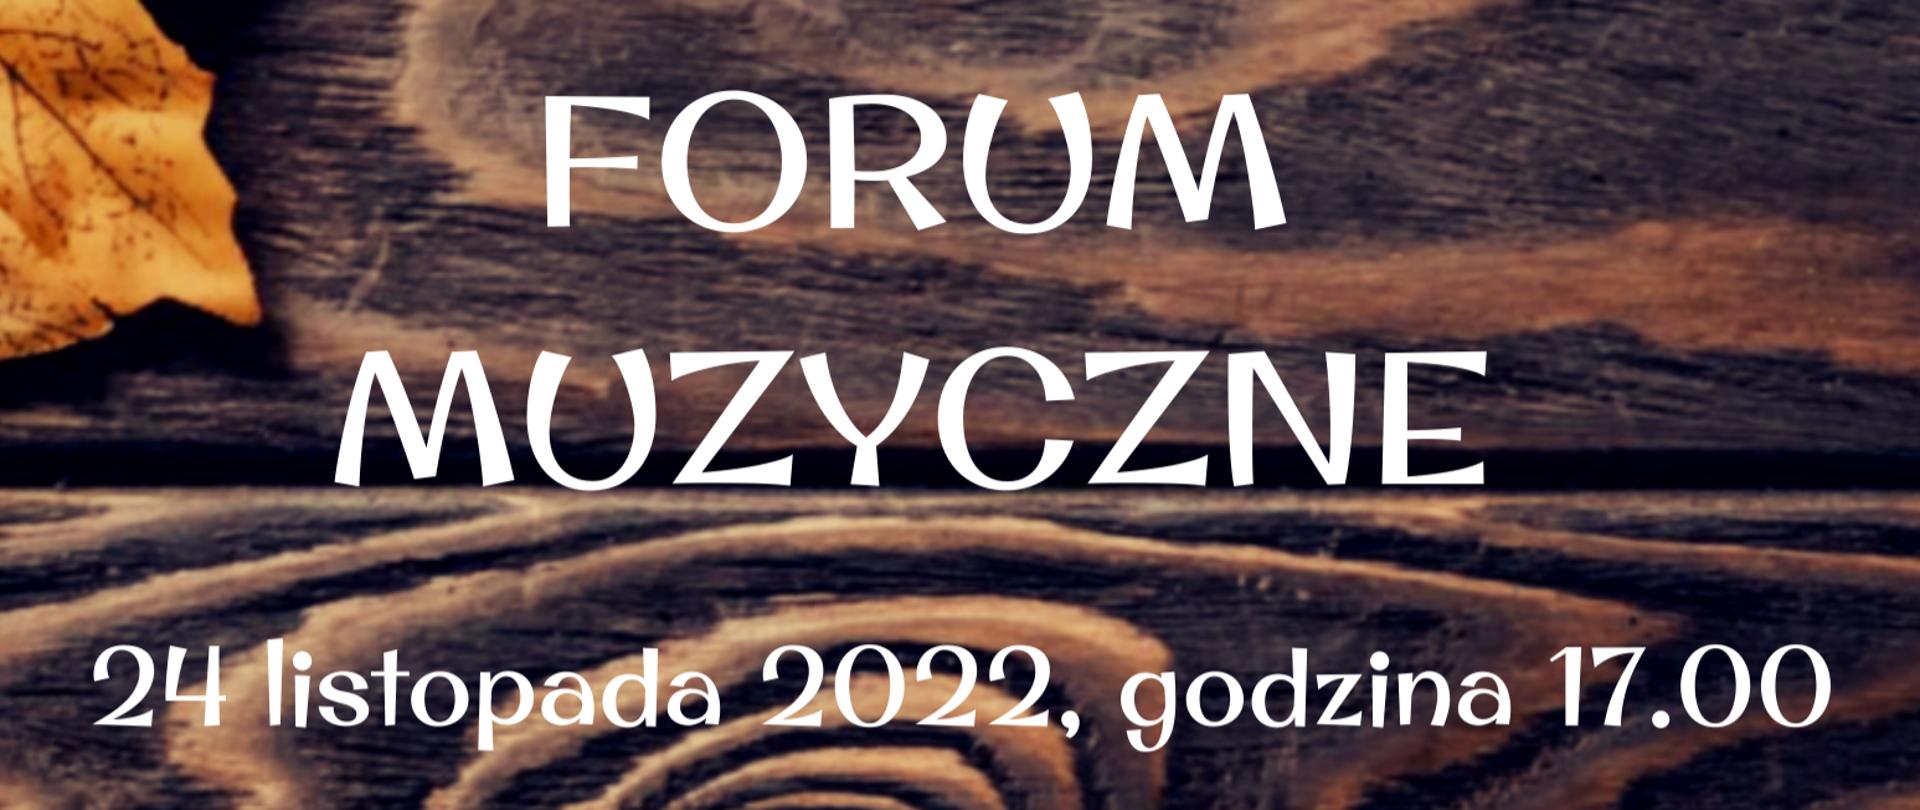 plakat zapowiadający Forum Muzyczne które odbędzie się 24 listopada 2022 r. 